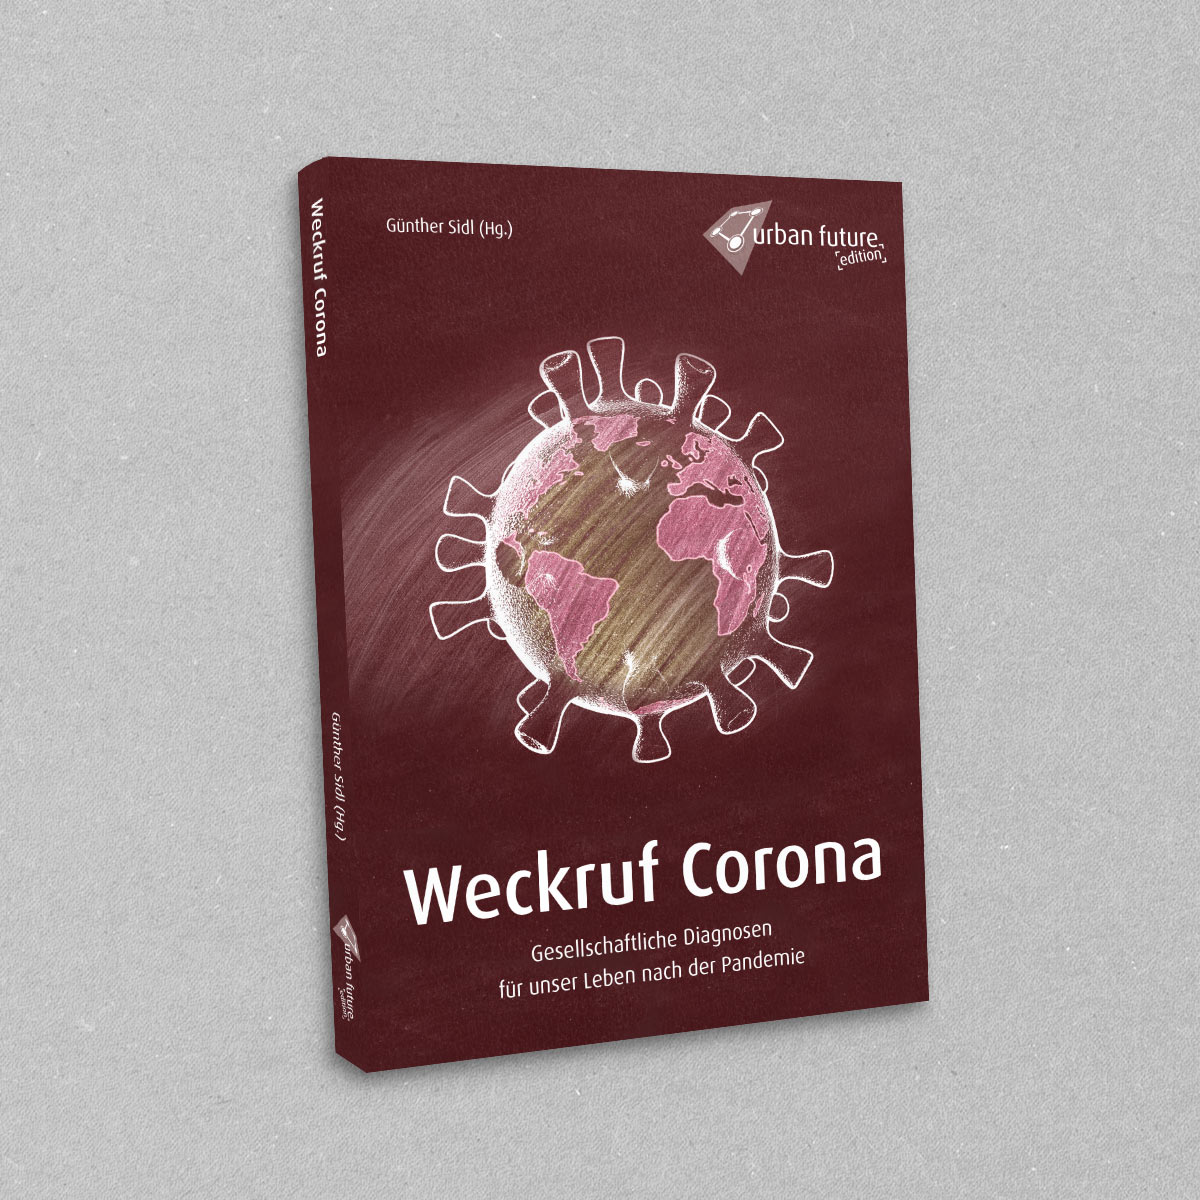 Urban Forum, Buch: Weckruf Corona